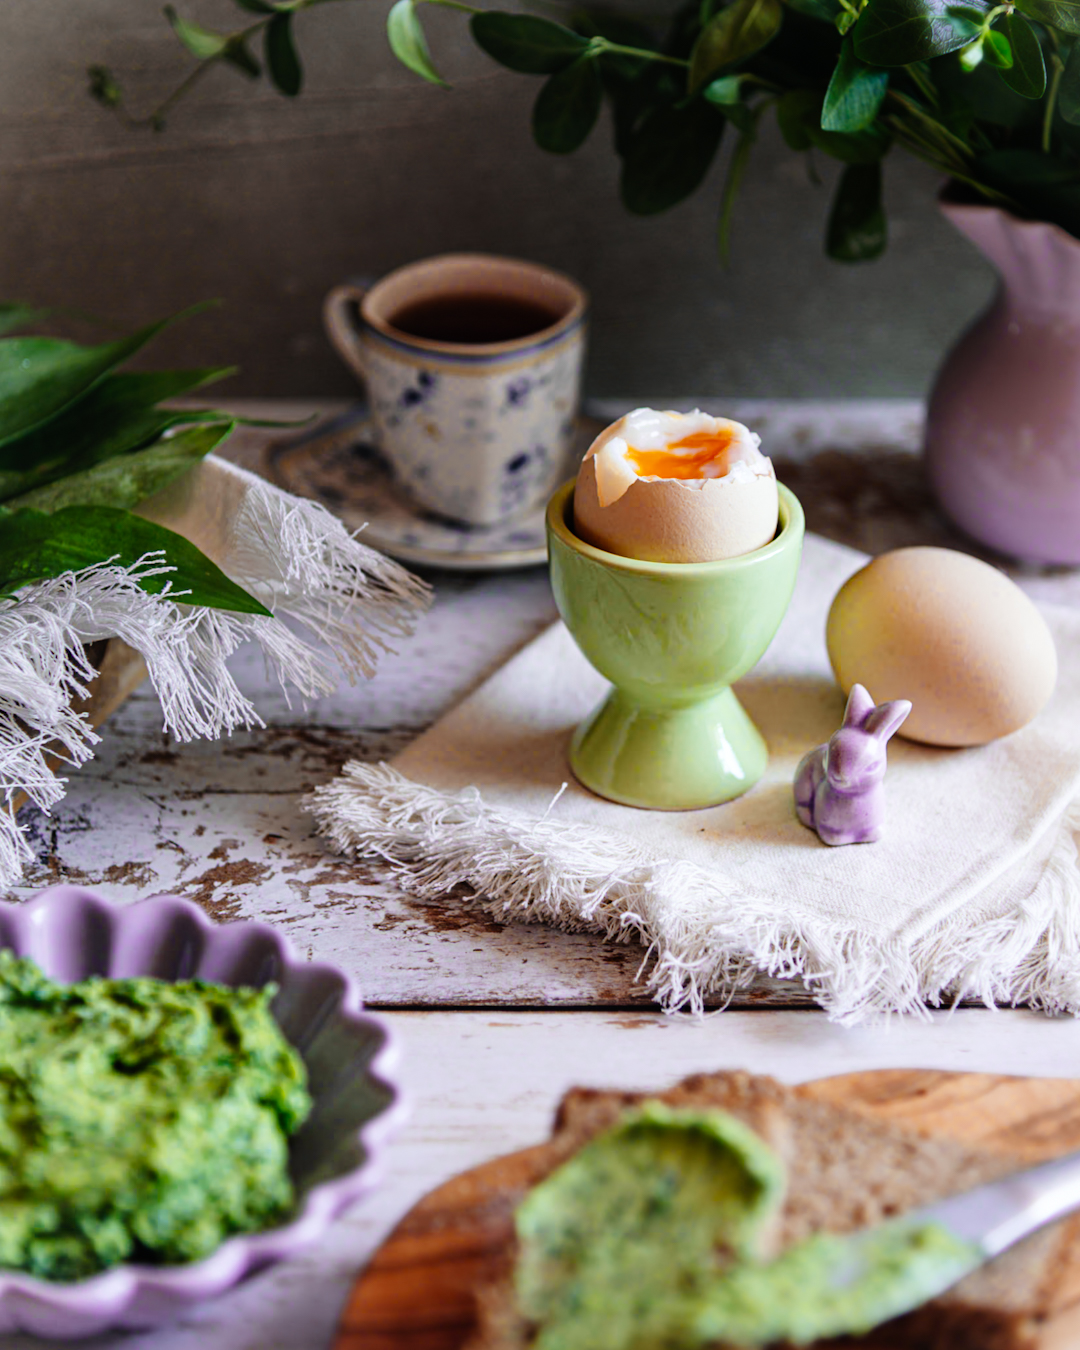 Na ściereczce stoi kieliszek z jakiem na miękko. Obok leży drugie jajko. W tle miska z zielonym masełkiem czosnkowym i filiżanka.